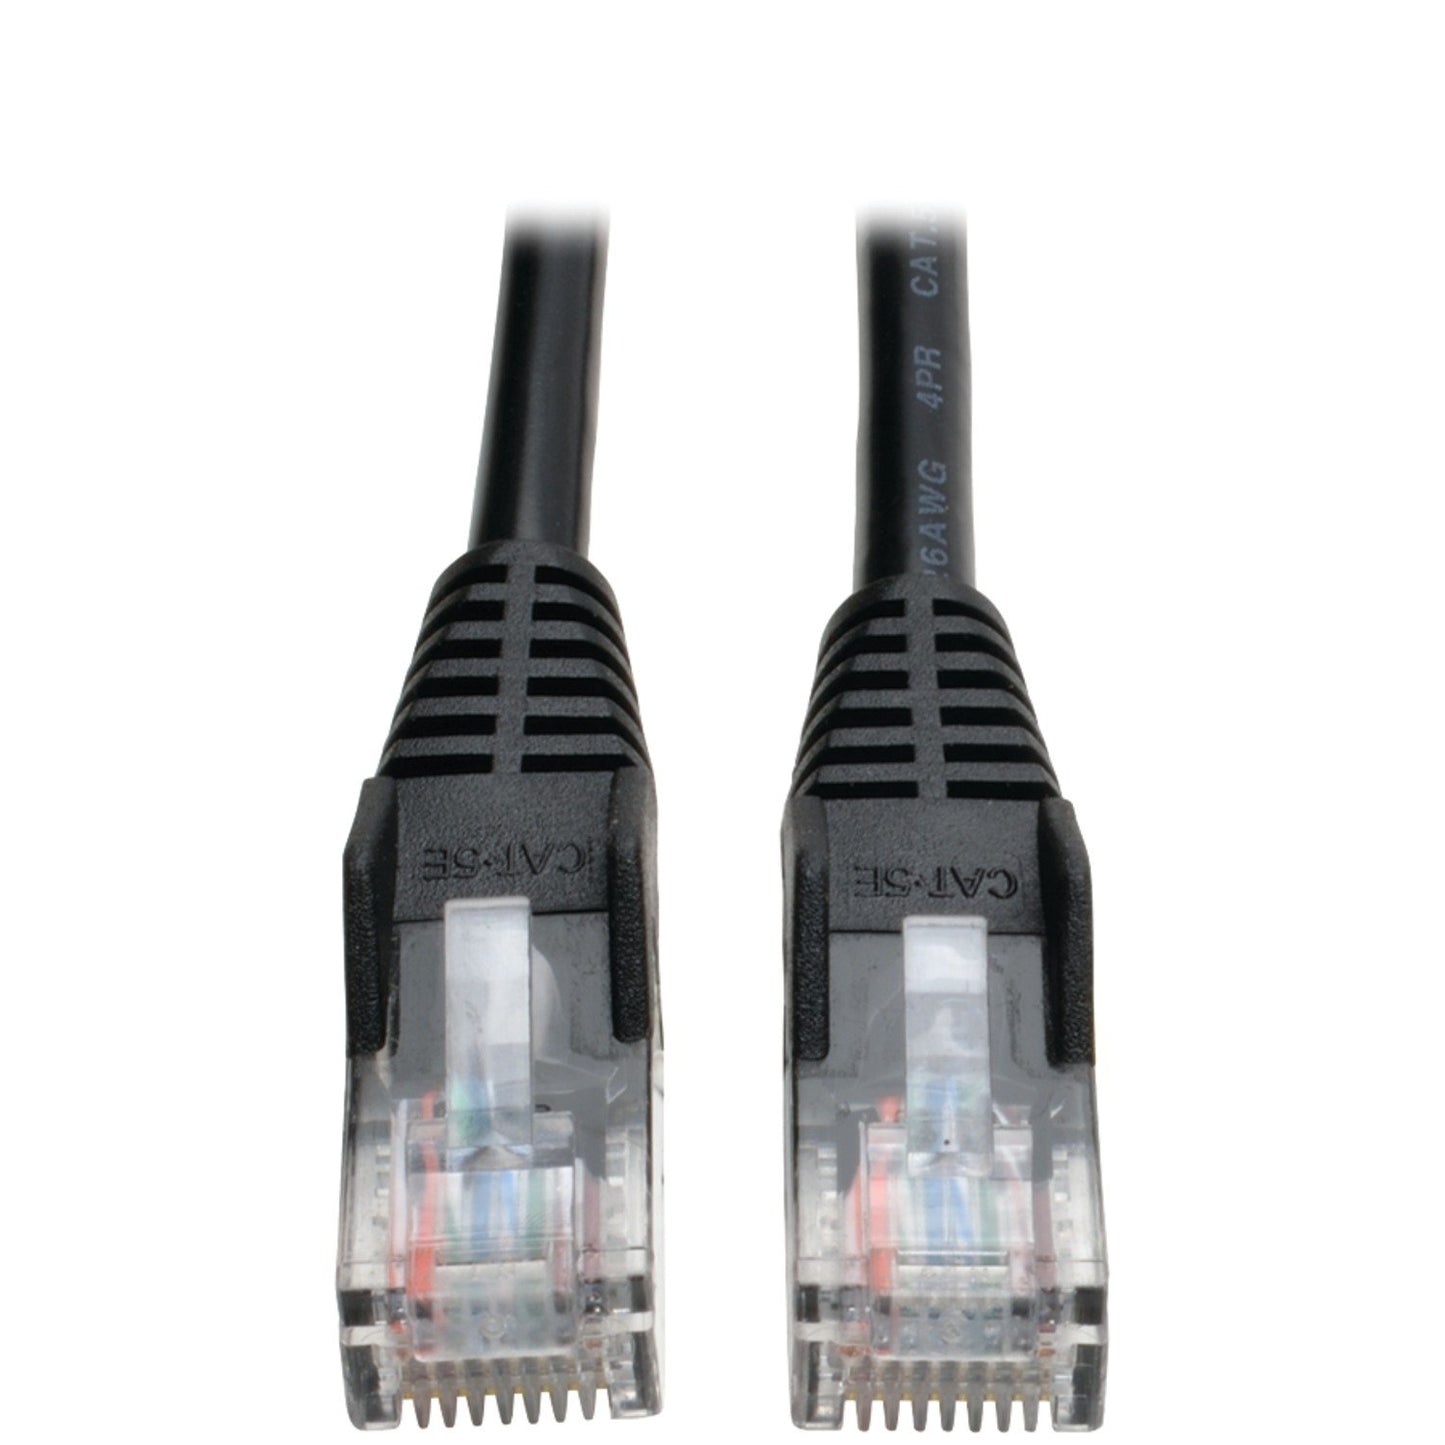 TRIPP LITE N001-025-BK CAT5E 350Mhz Cable 25 Ft